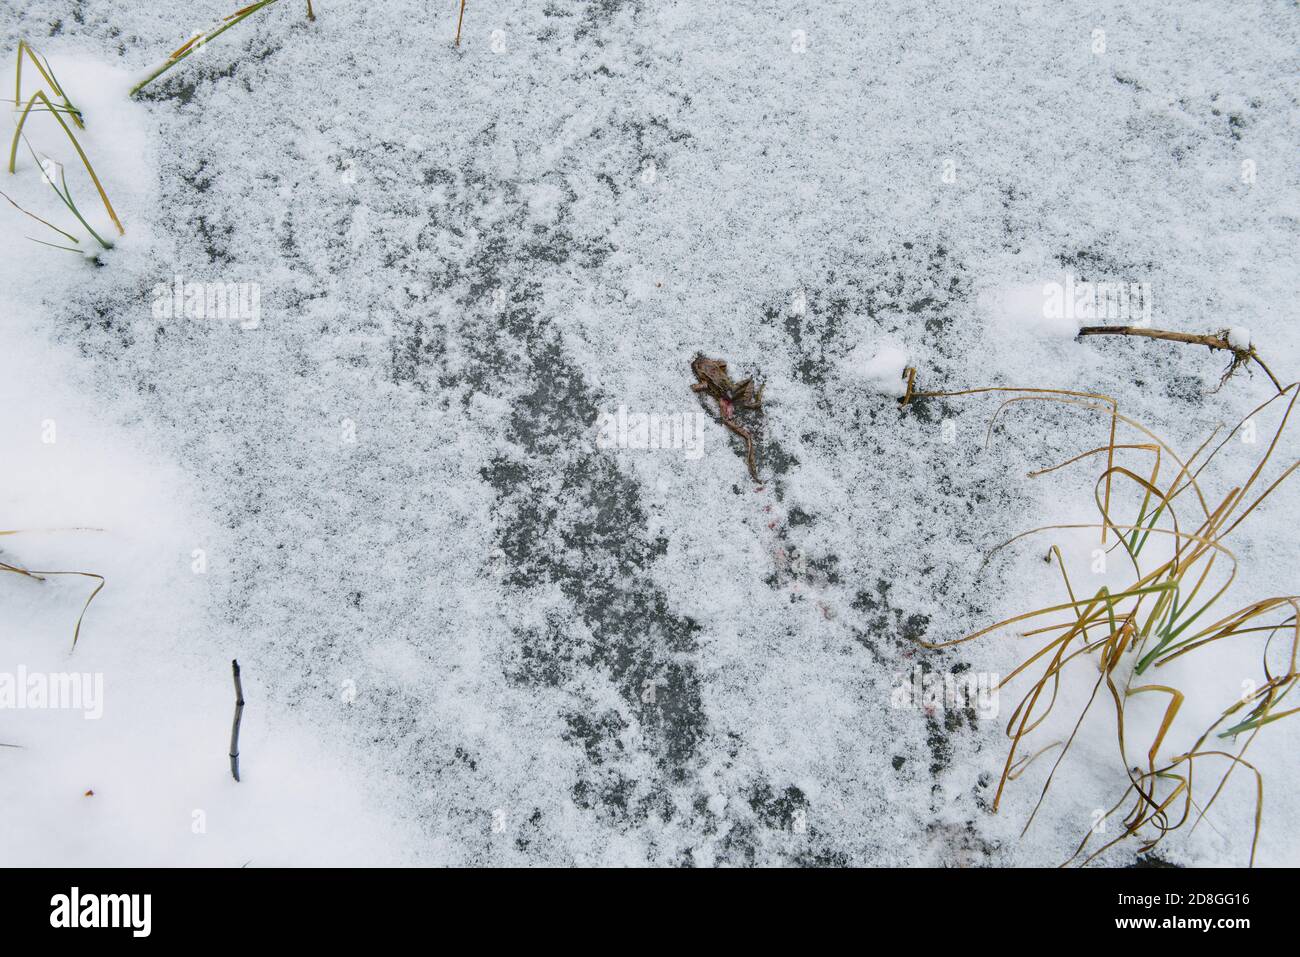 Rana muerta picada por aves en la superficie de un lago congelado. Foto de stock